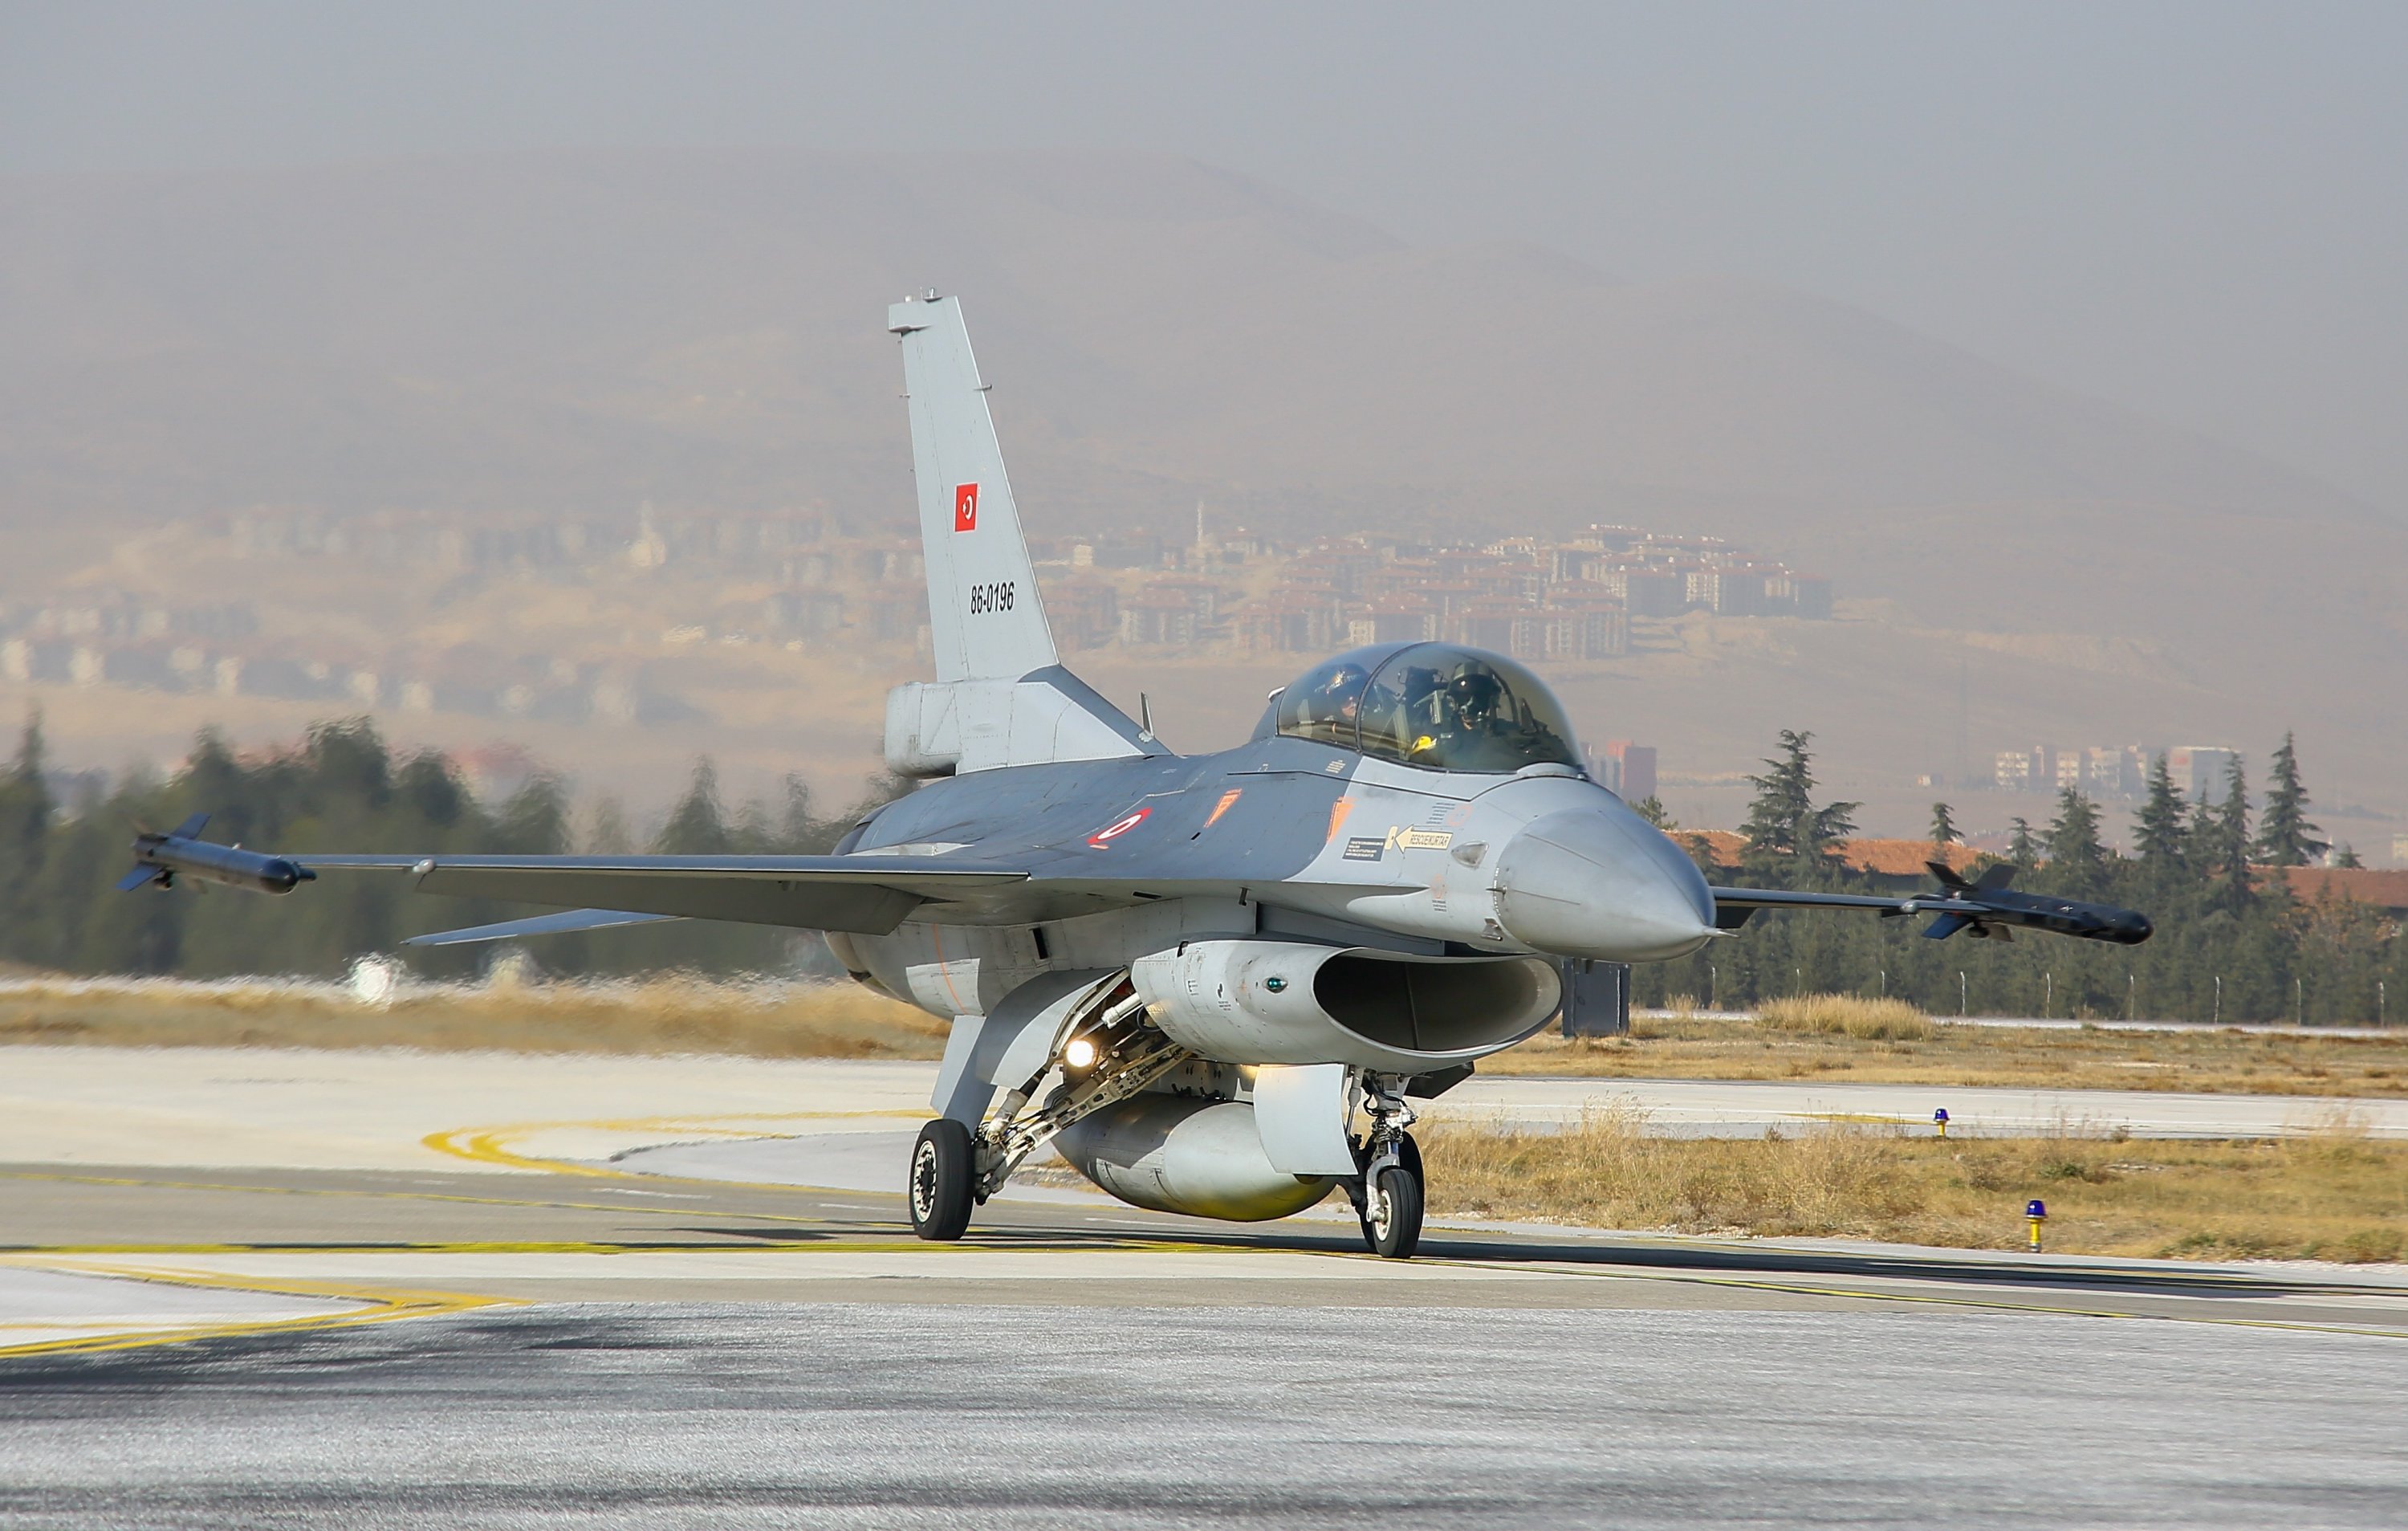 A SOLOTÜRK F-16 getting ready for takeoff, Ankara, Turkey, Dec. 25, 2021.